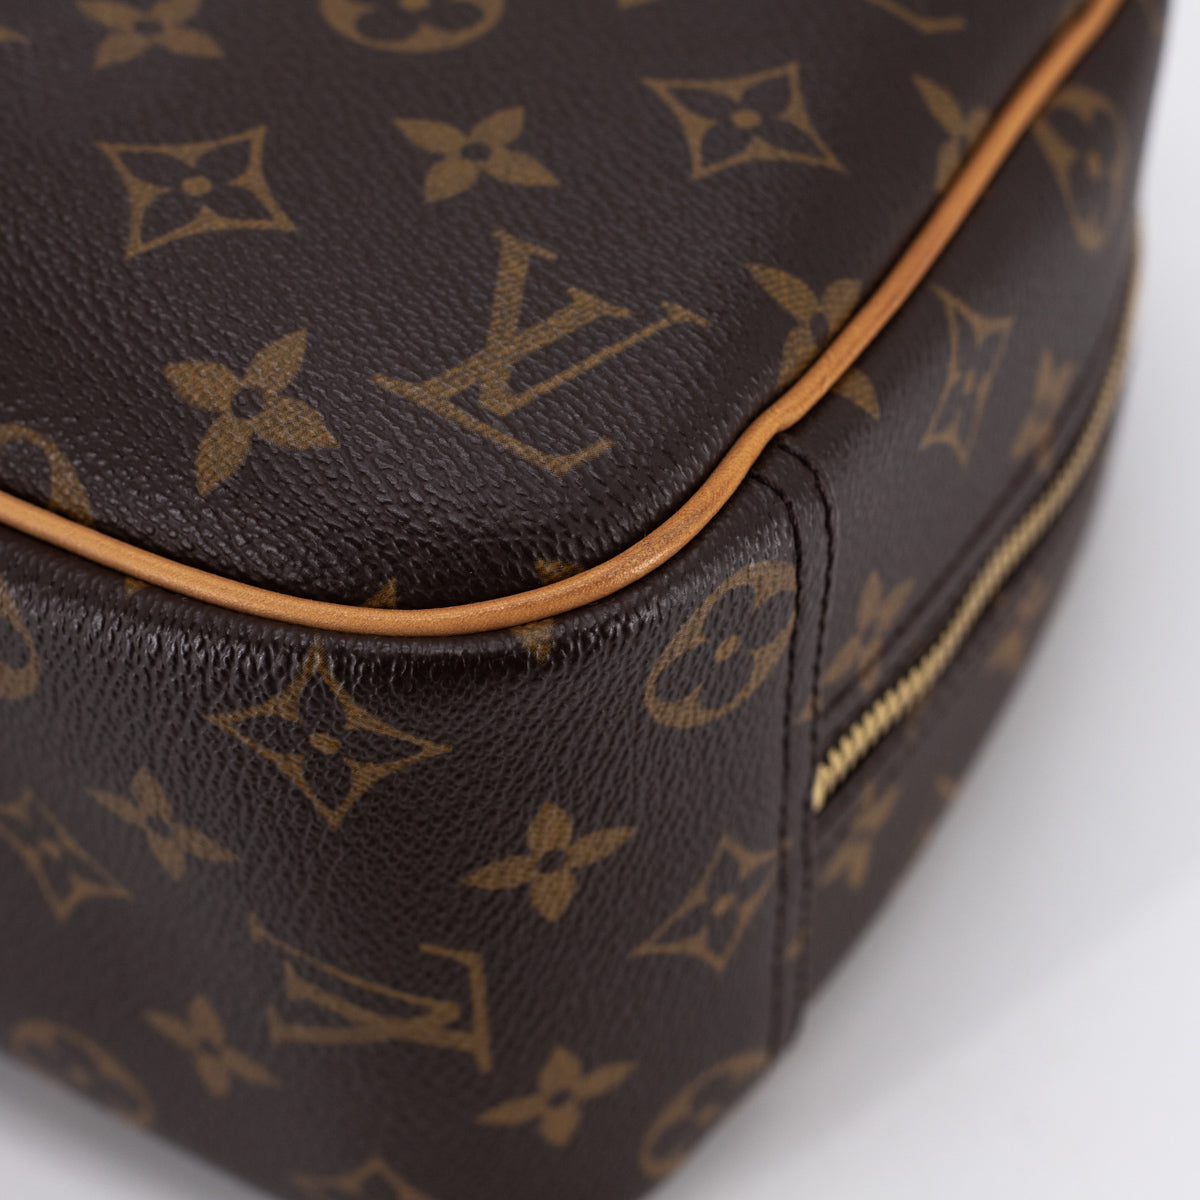 Louis-Vuitton-Monogram-Trouville-Hand-Bag-Brown-M42228 – dct